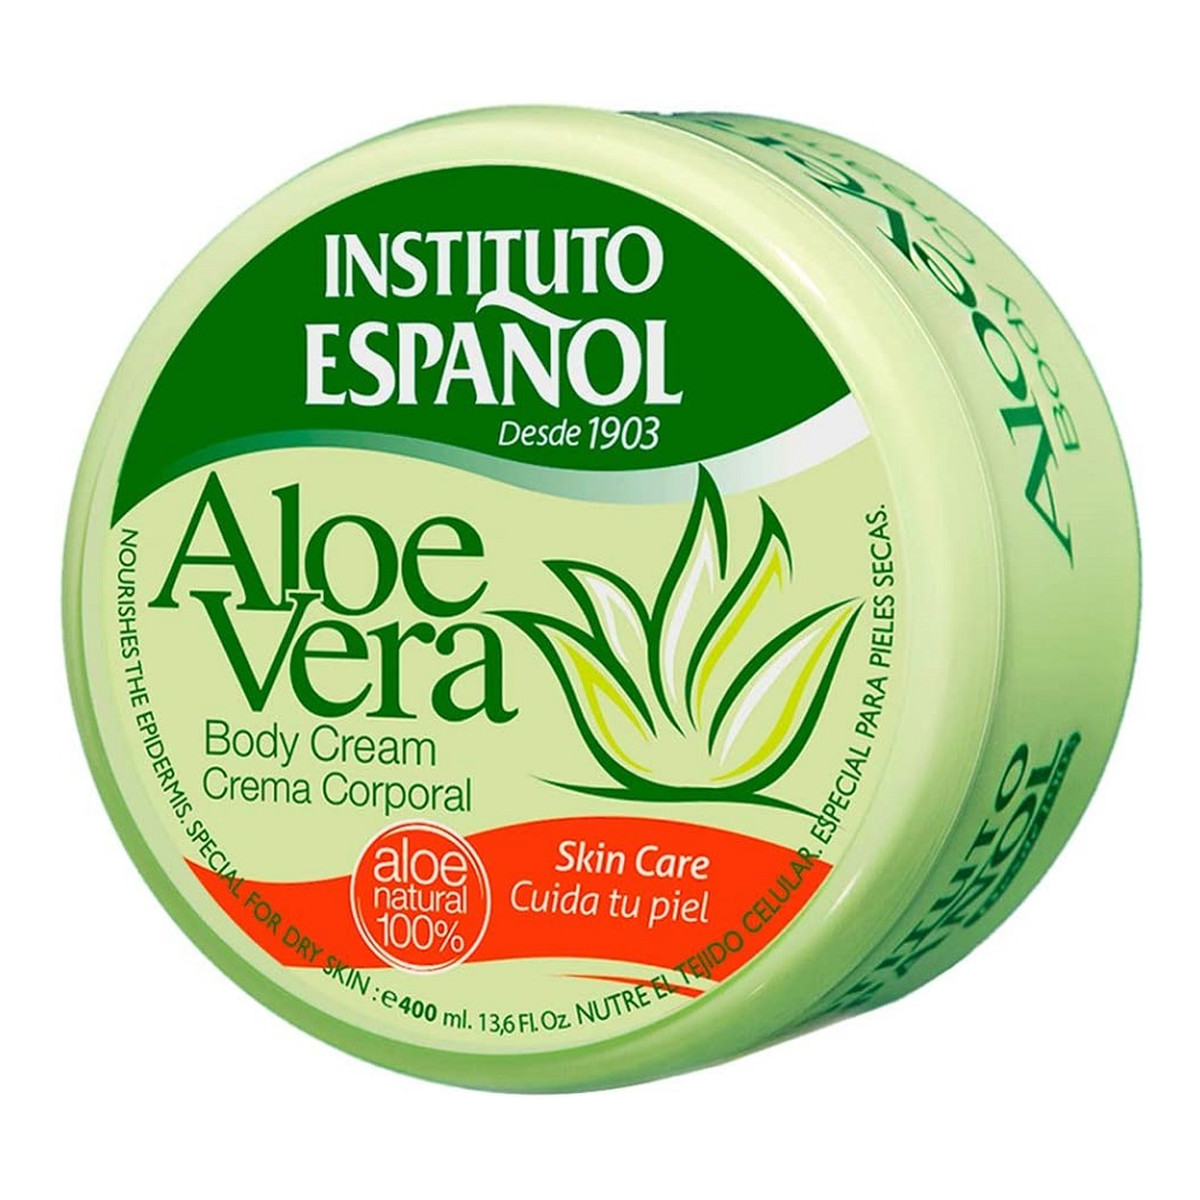 Instituto Espanol Aloe Vera Body Cream nawilżający Krem do ciała i rąk na bazie aloesu 200ml